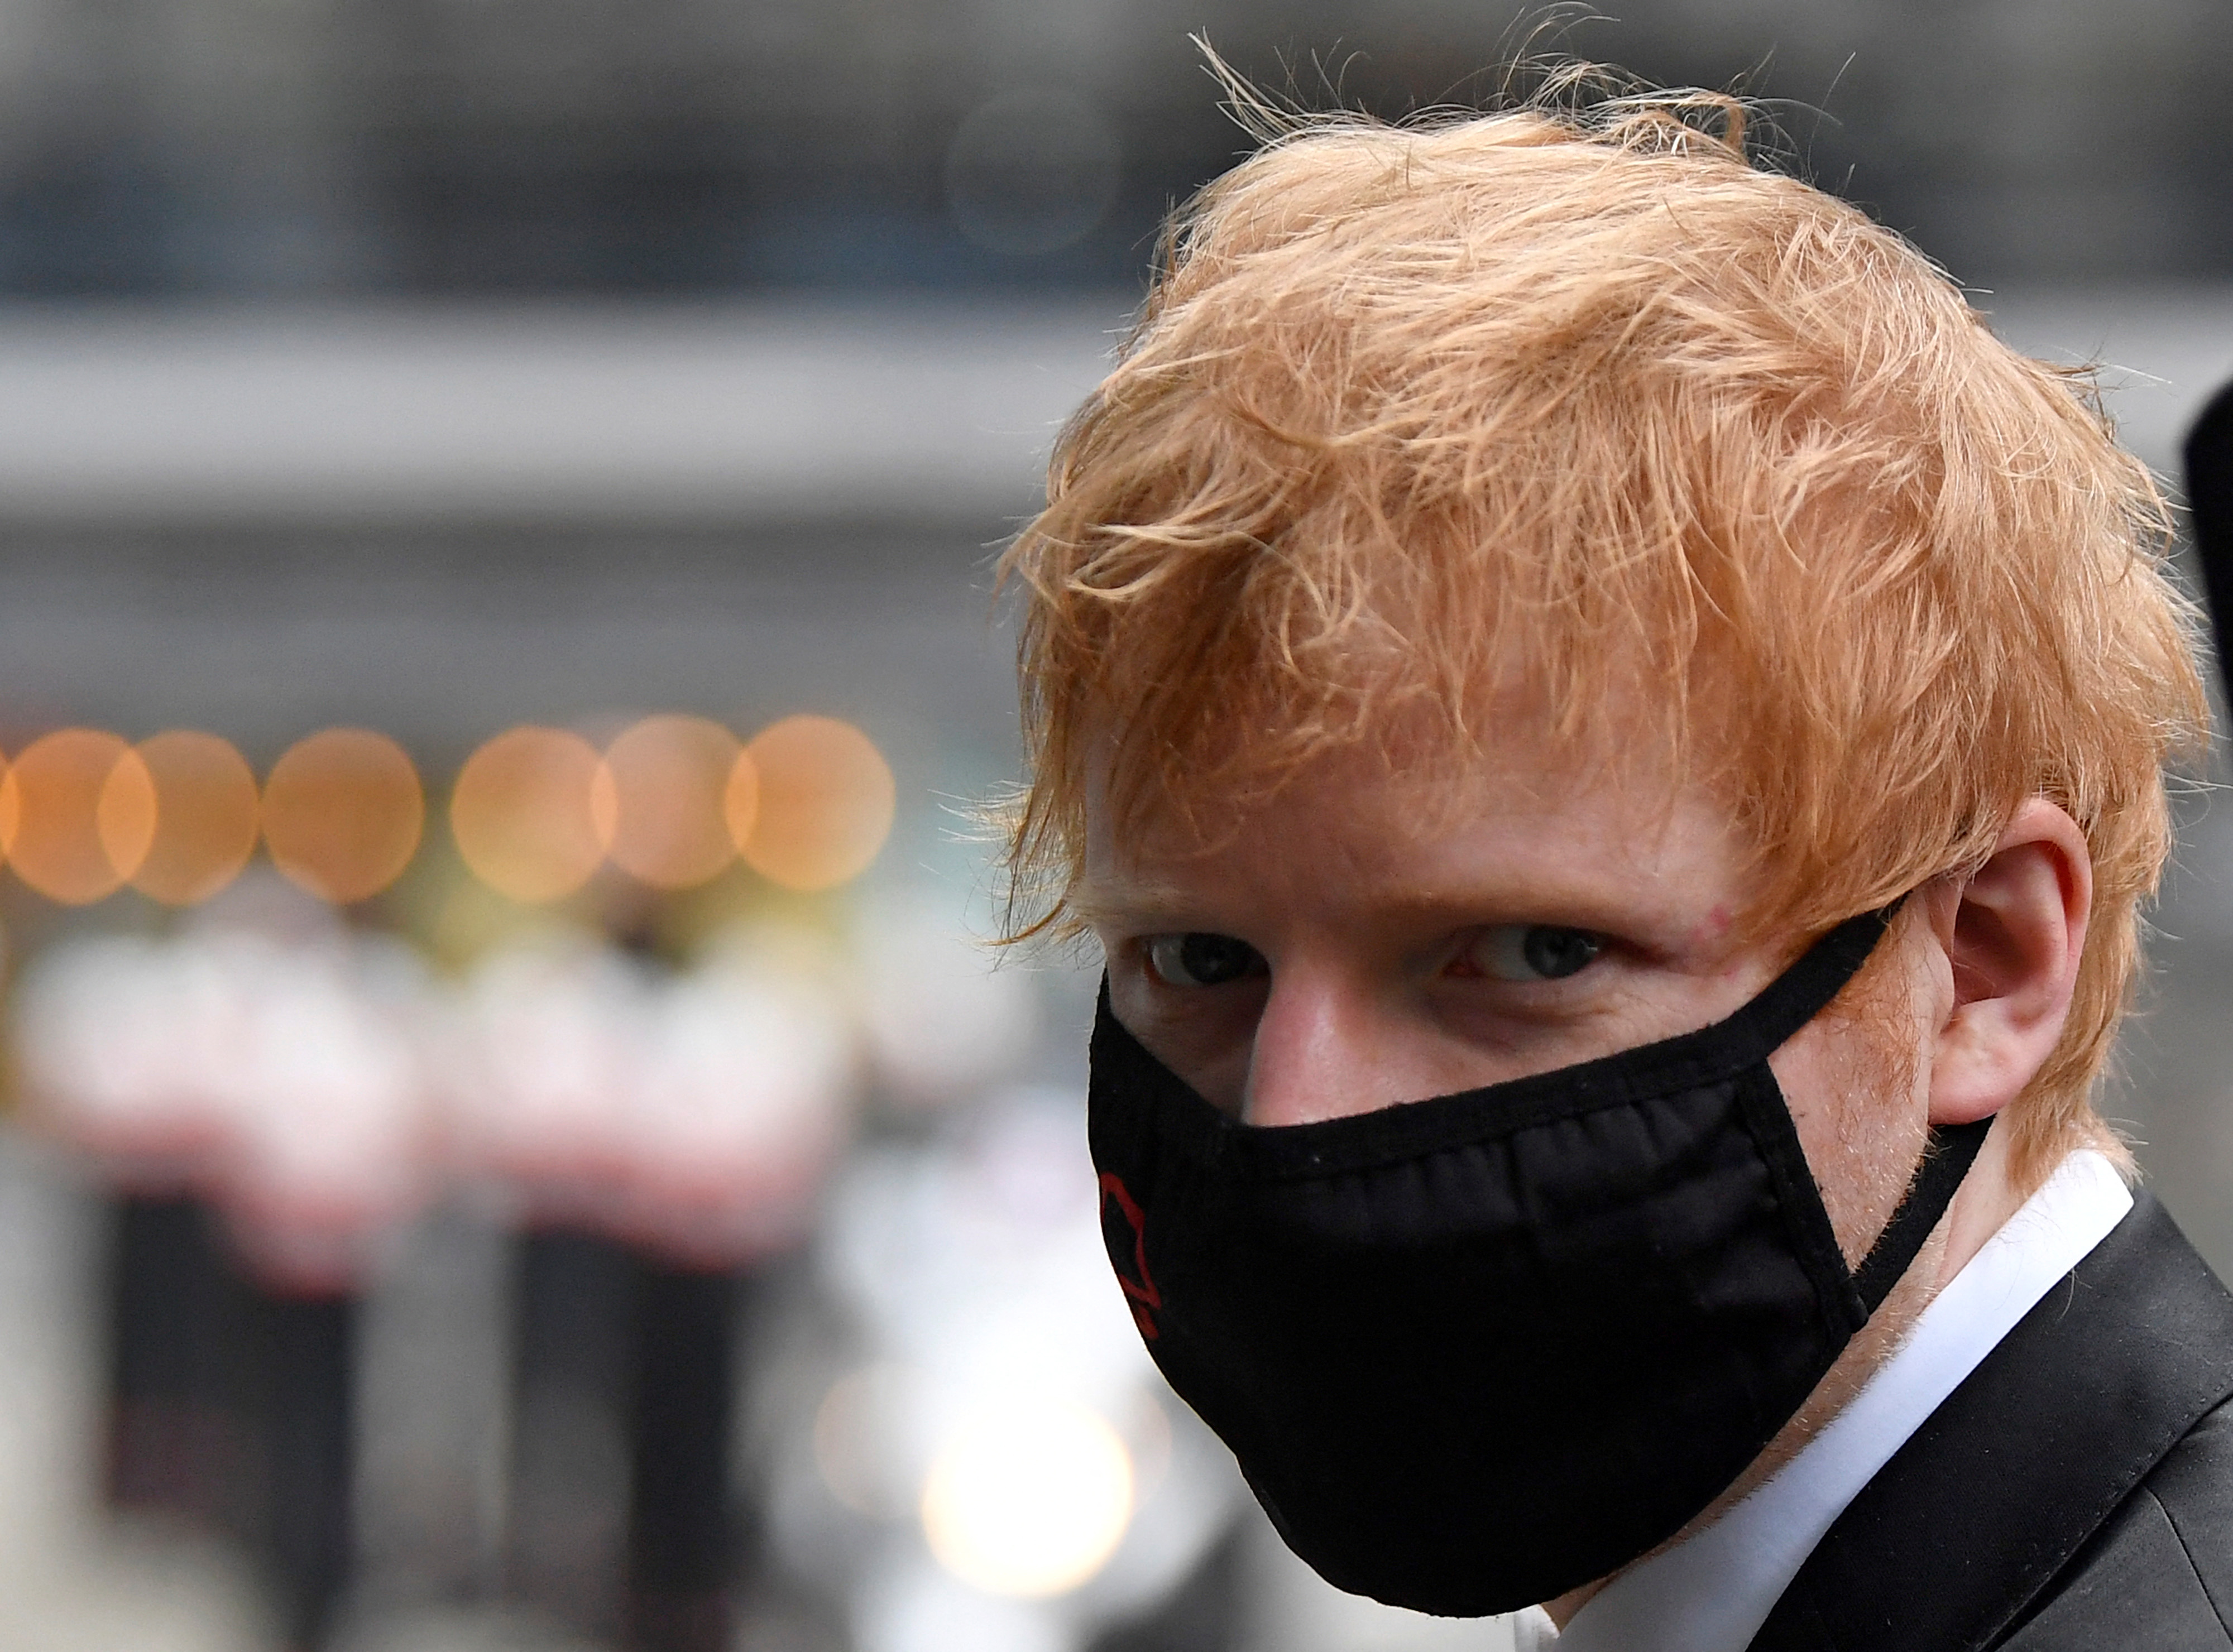 Ed Sheeran's copyright trial in London